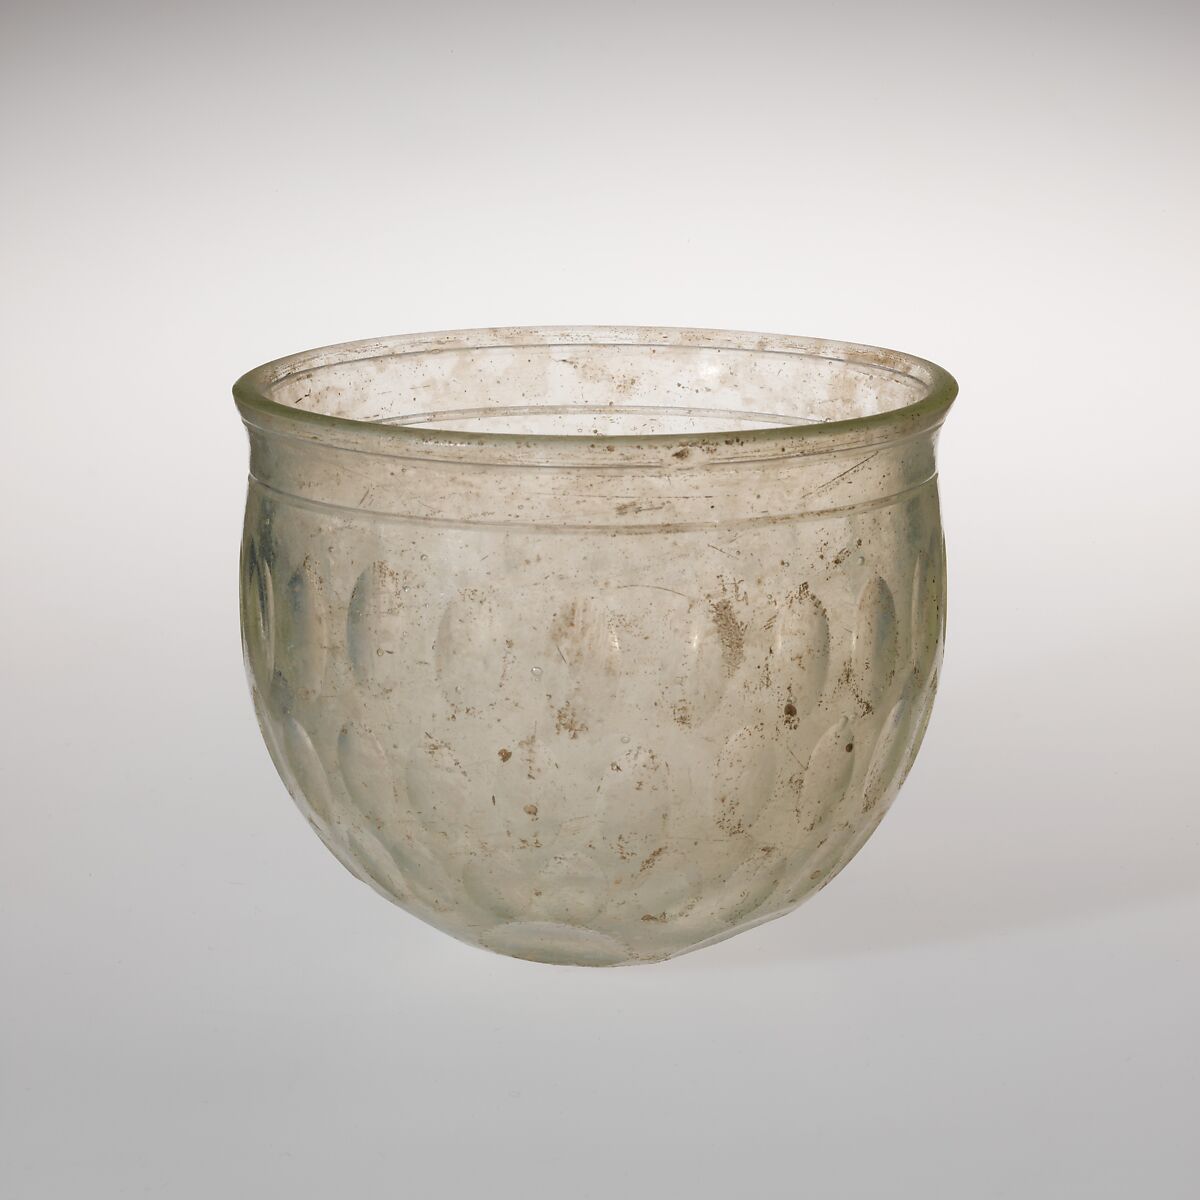 Glass bowl, Glass, Roman 